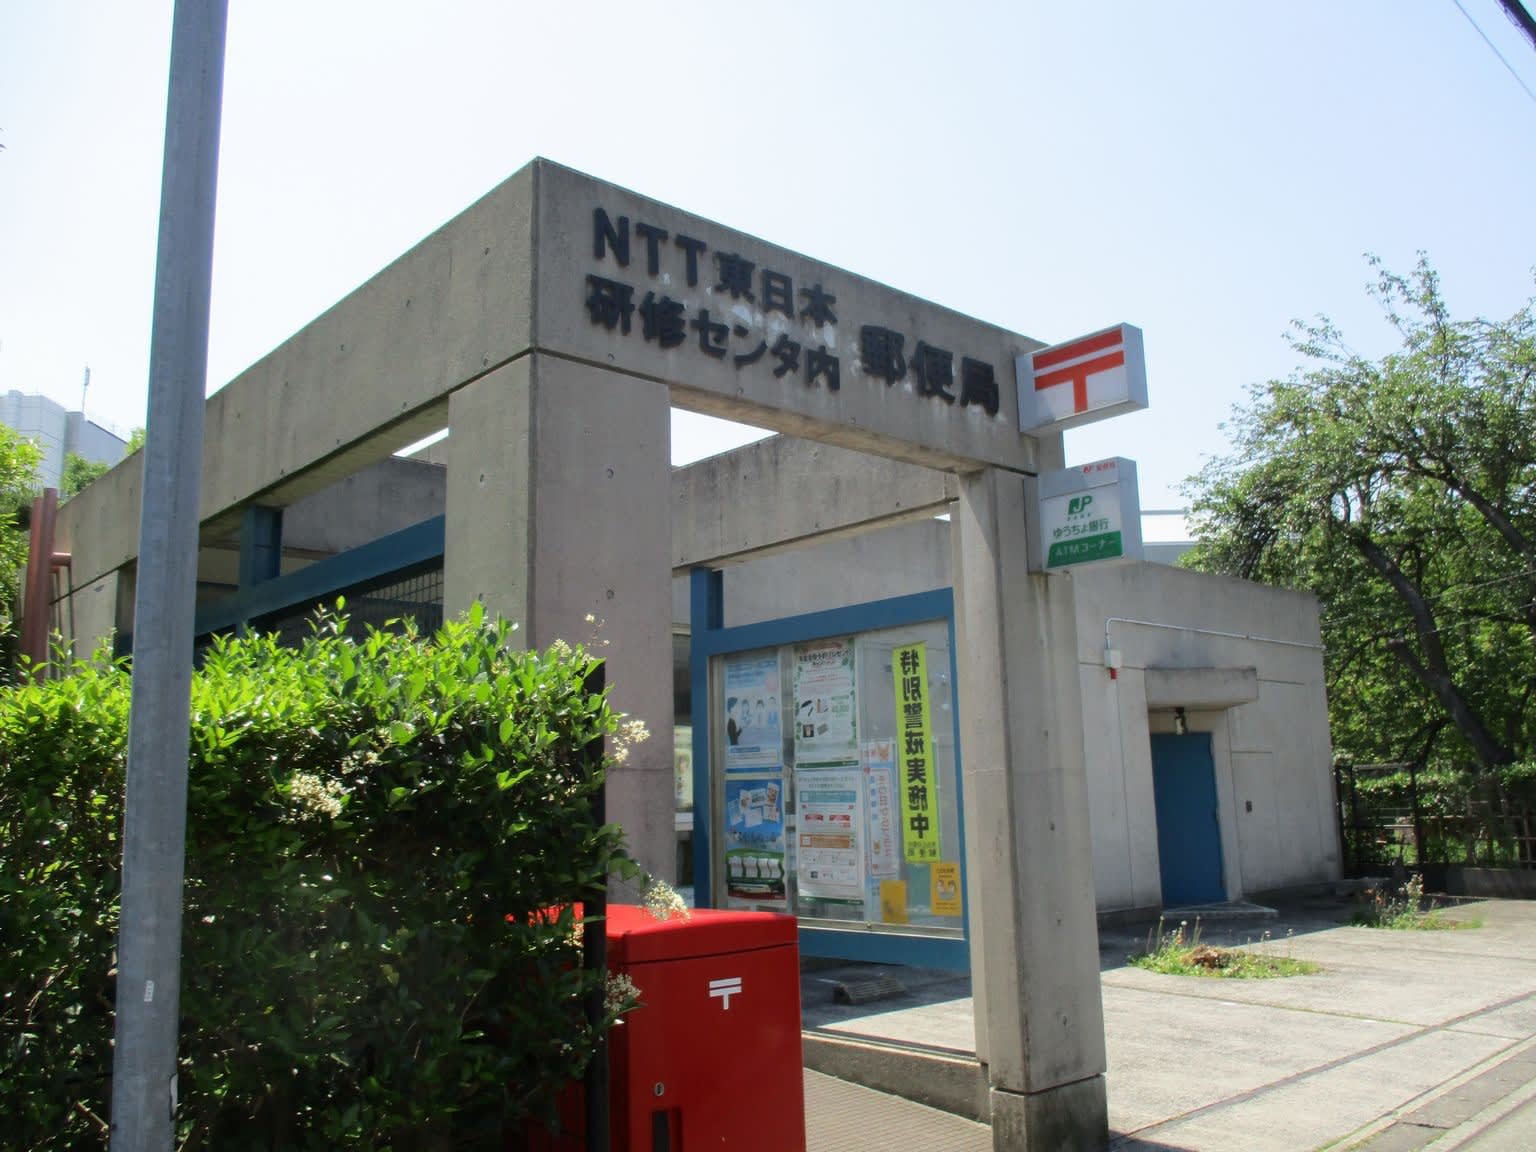 Ntt東日本研修センタ内郵便局の風景印 風景印集めと日々の散策写真日記